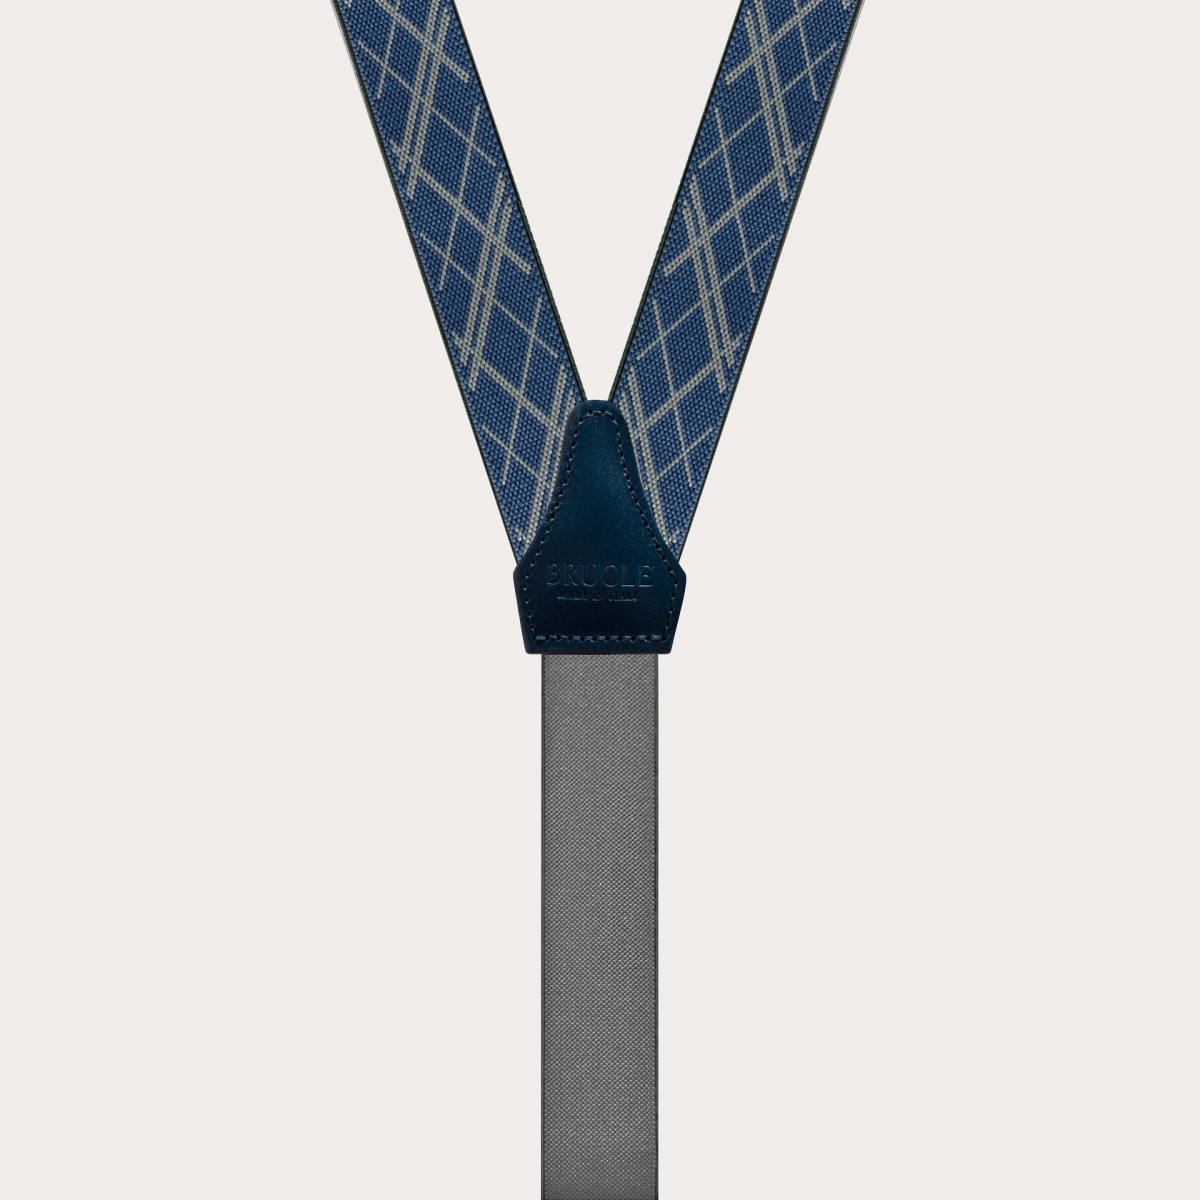 BRUCLE Klassische, nickelfreie dünne Hosenträger mit geometrischem Muster, blau